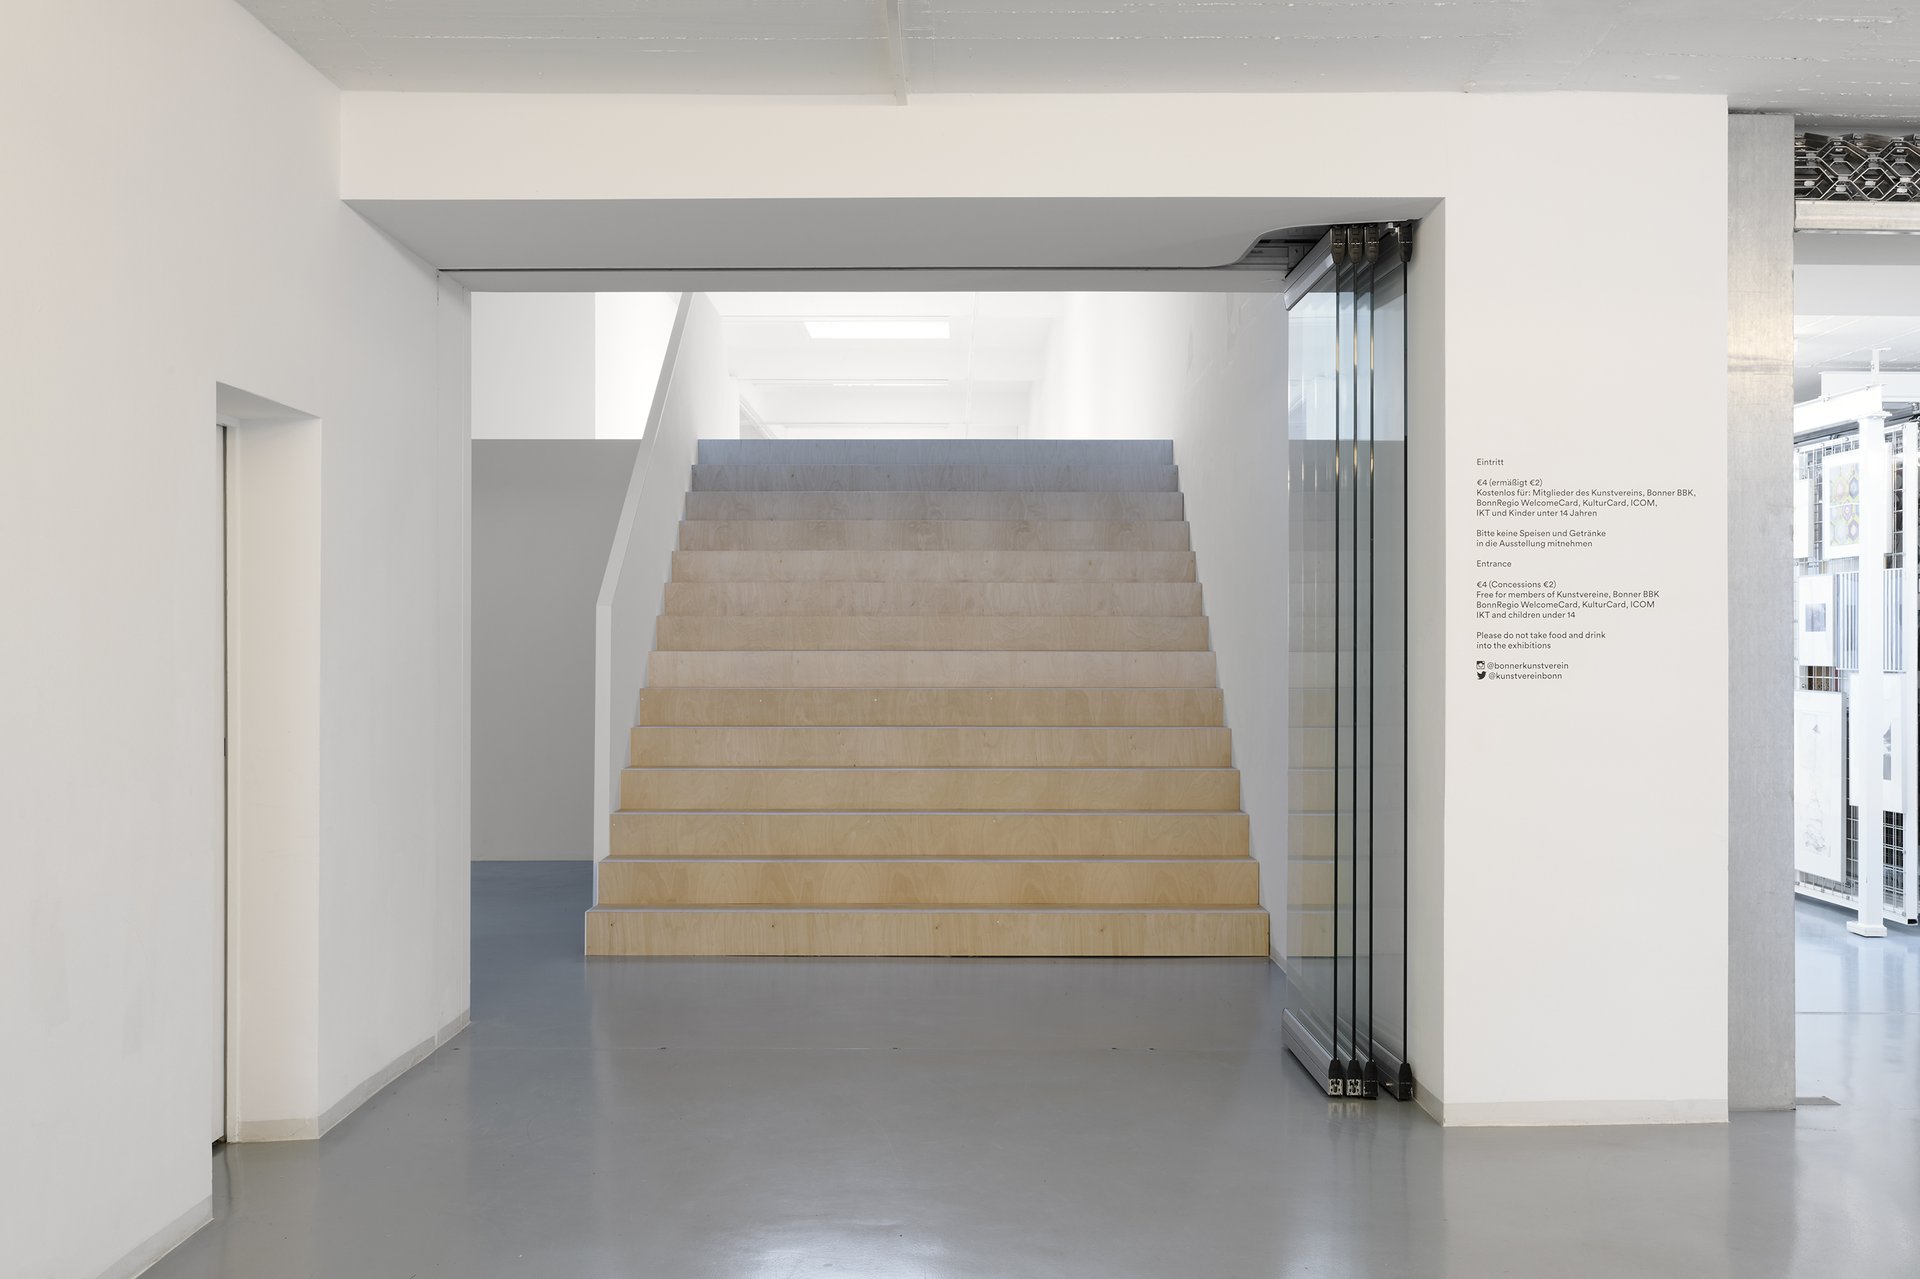 Michael Kleine, Treppe und Wand, 2021. Ausstellungsansicht: The Holding Environment, Bonner Kunstverein, 2021. Foto: Mareike Tocha. Courtesy der Künstler.